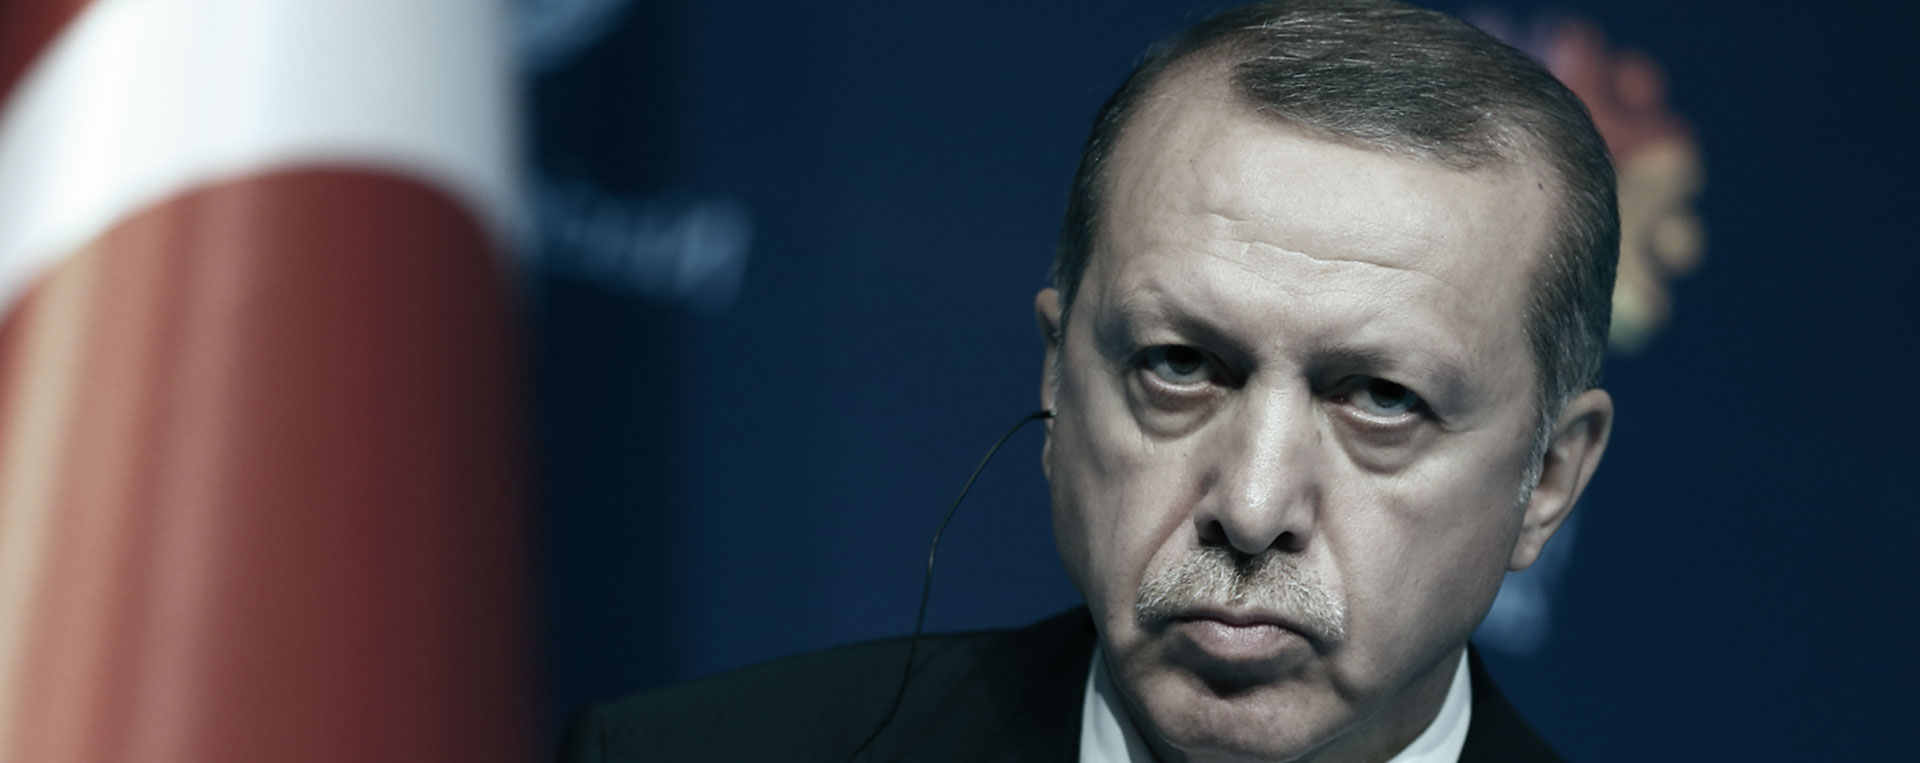 Tayyip Erdogan, President of Turkey